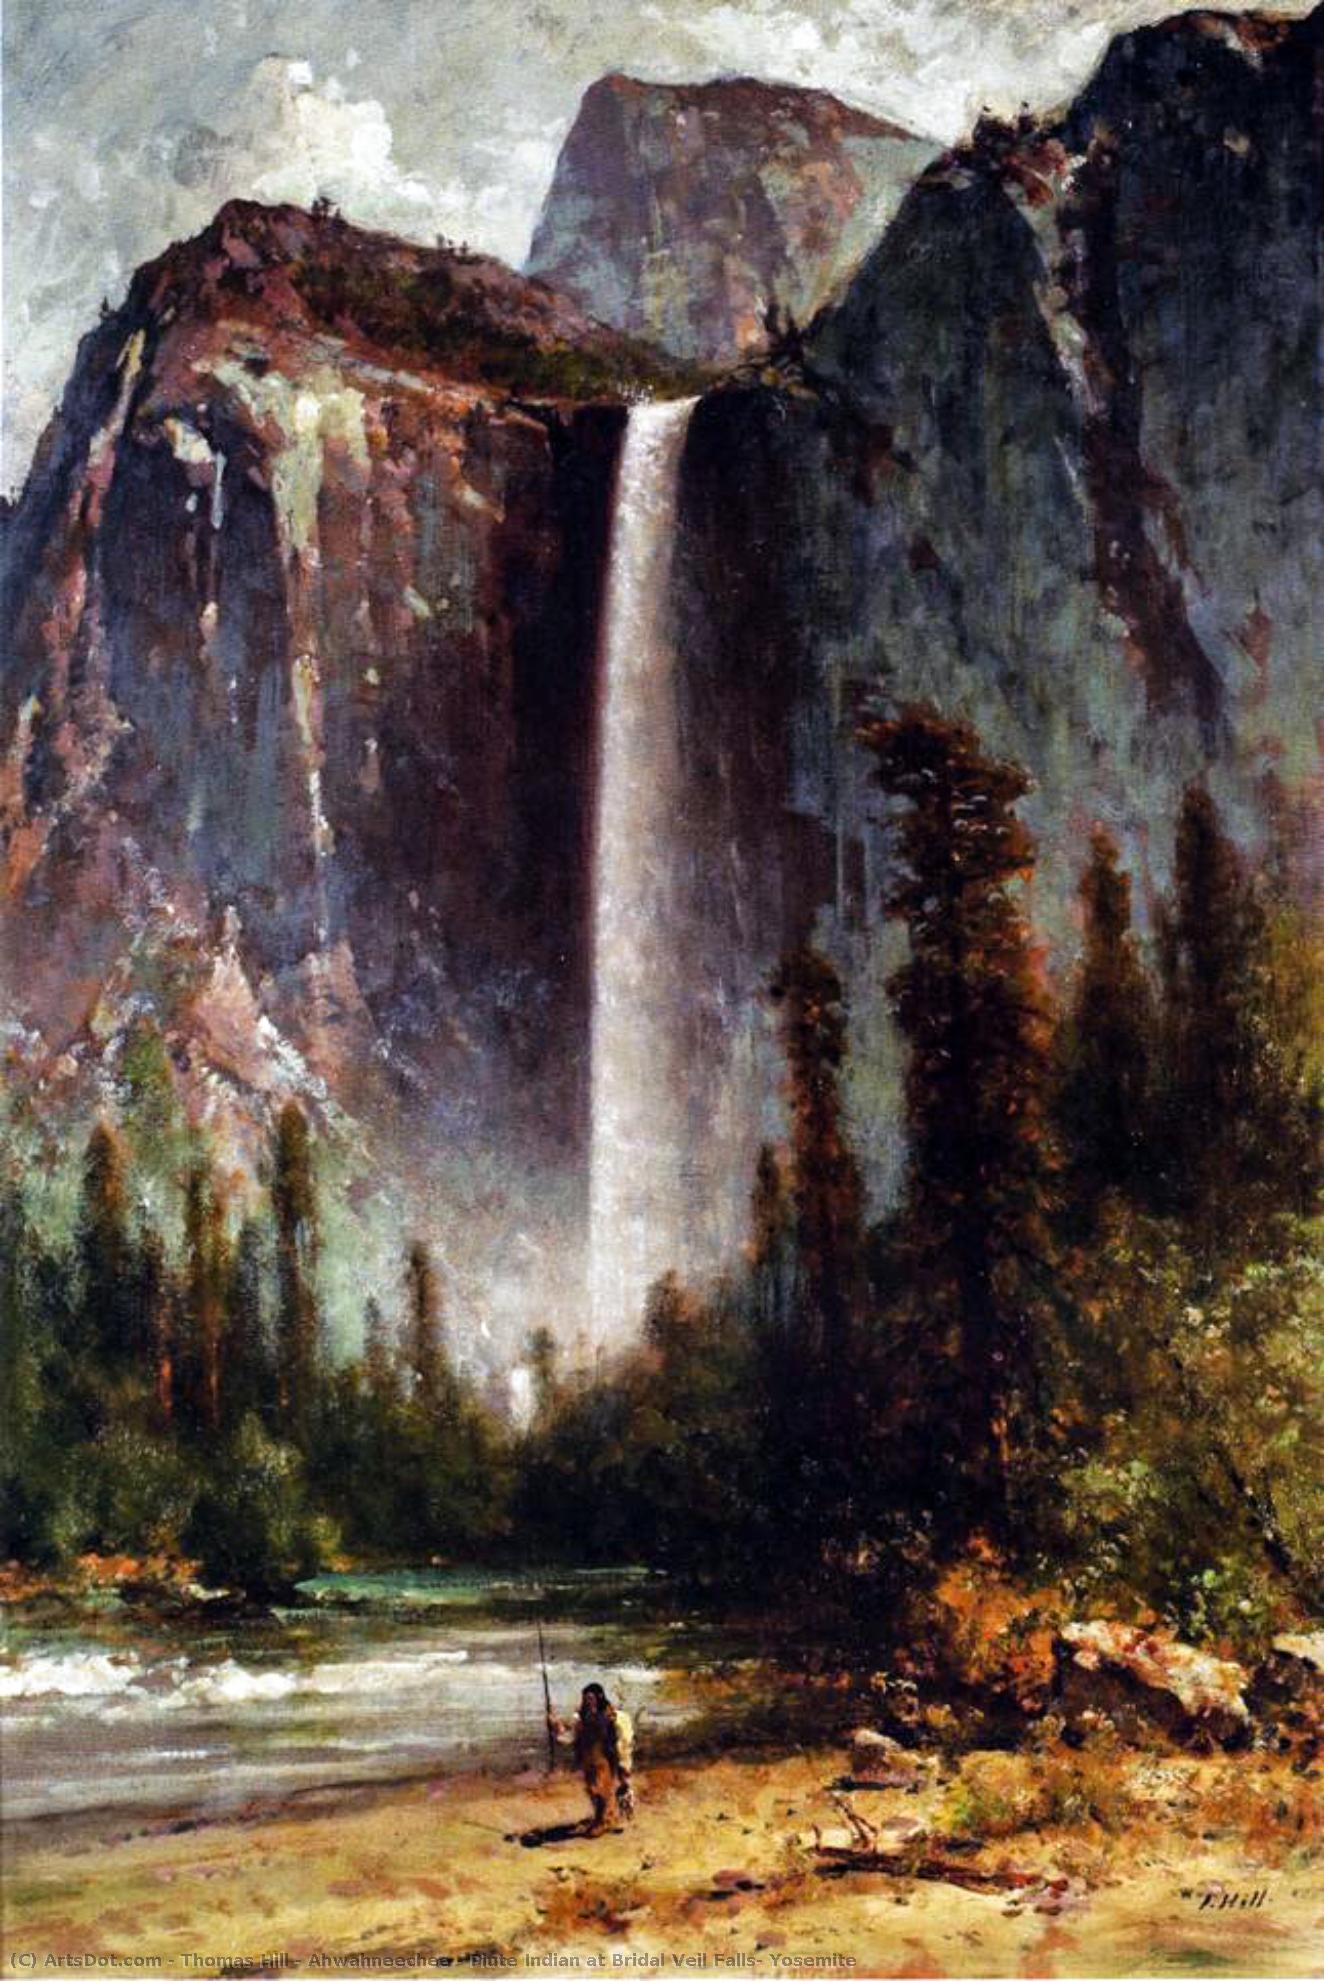 Wikoo.org - موسوعة الفنون الجميلة - اللوحة، العمل الفني Thomas Hill - Ahwahneechee - Piute Indian at Bridal Veil Falls, Yosemite